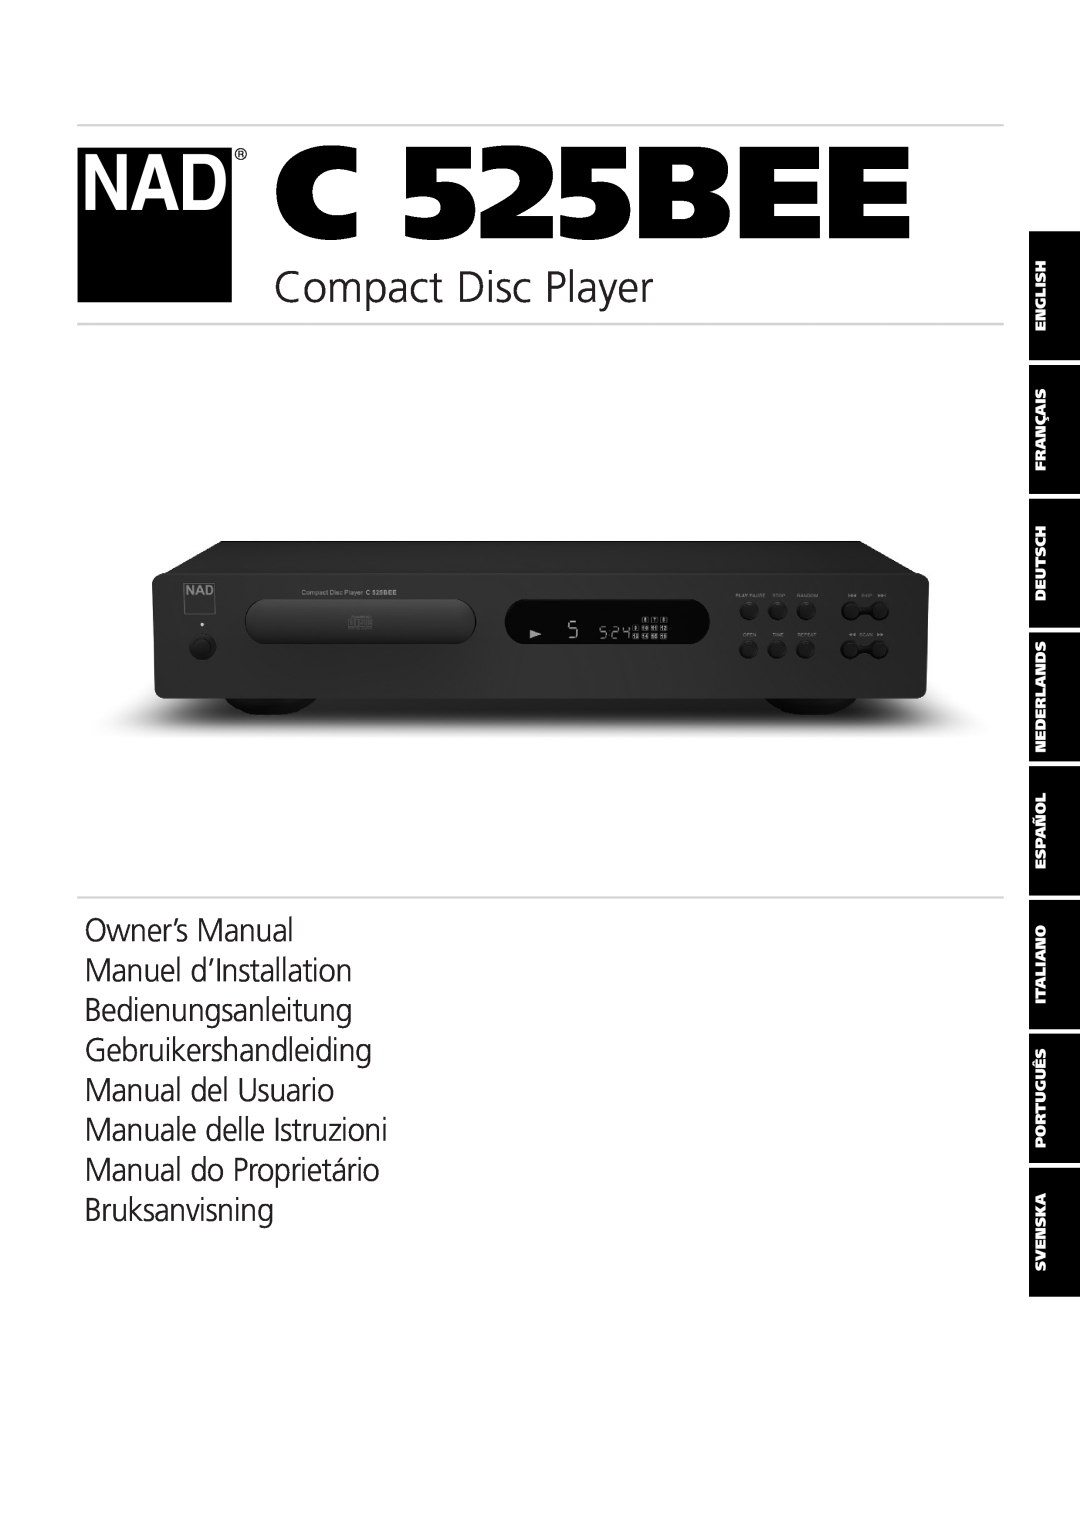 NAD C 525BEE owner manual Compact Disc Player, Bedienungsanleitung Gebruikershandleiding 